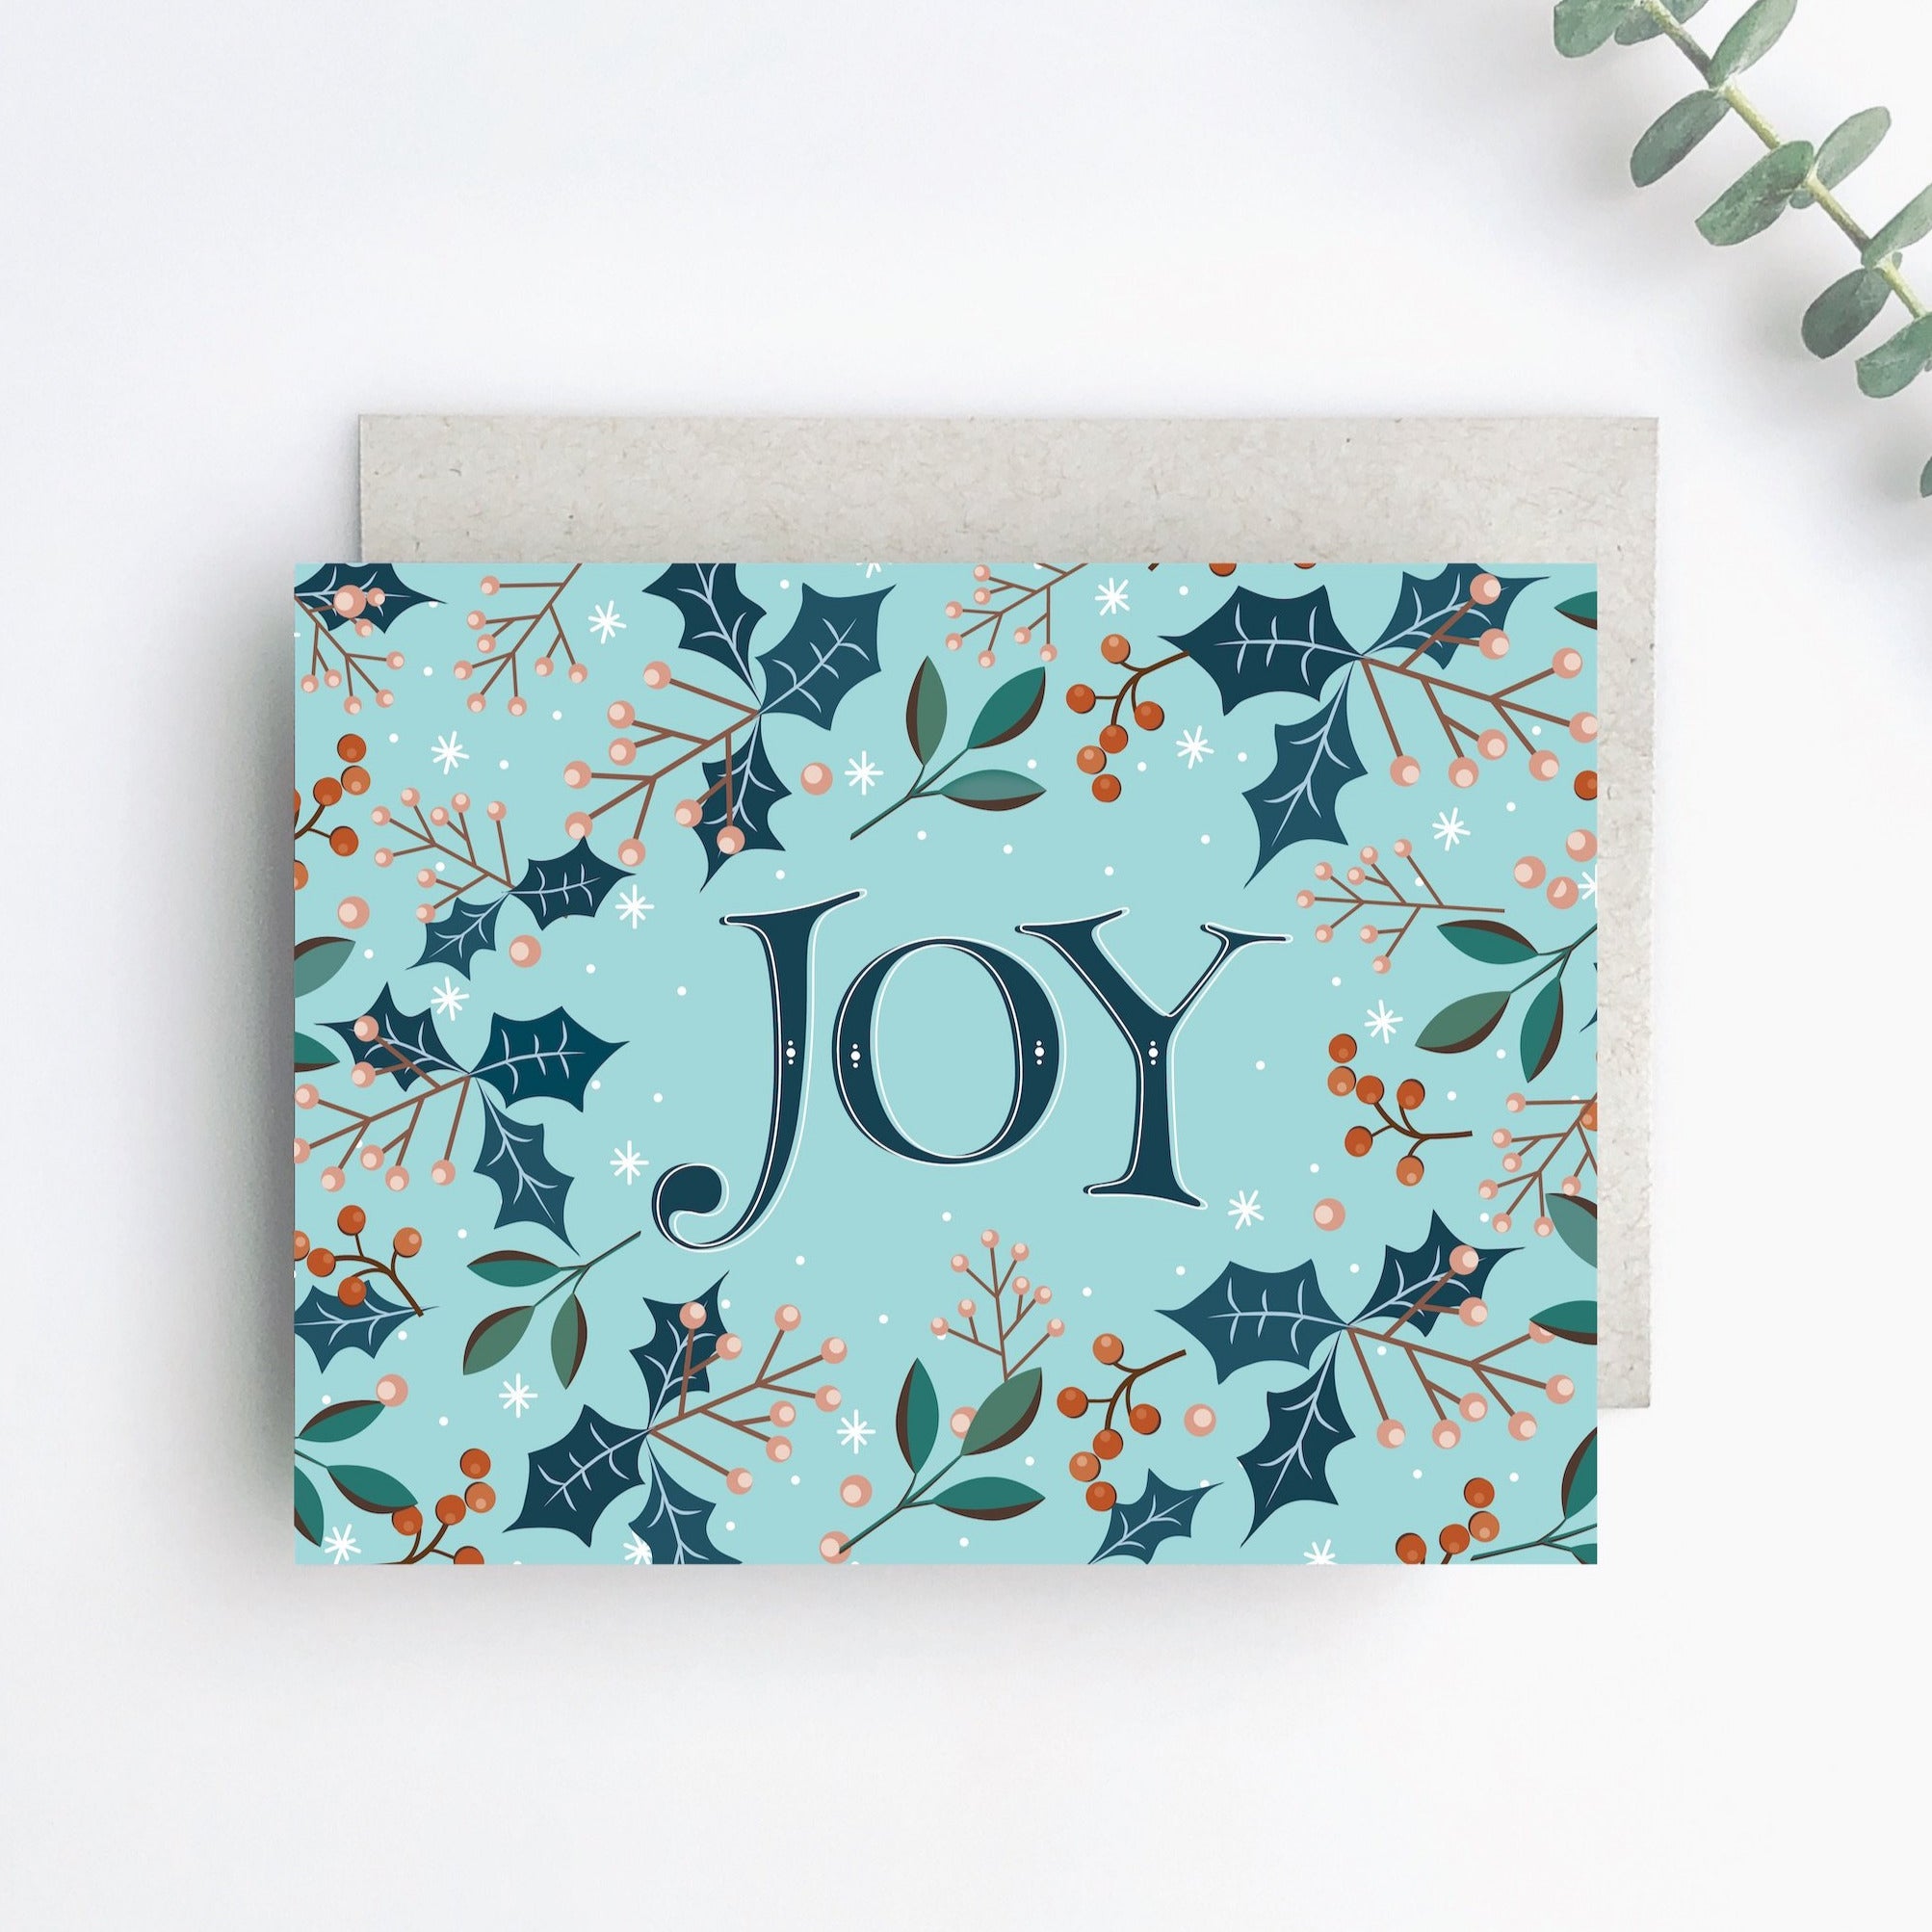 Holly Joy Holiday Greeting Card